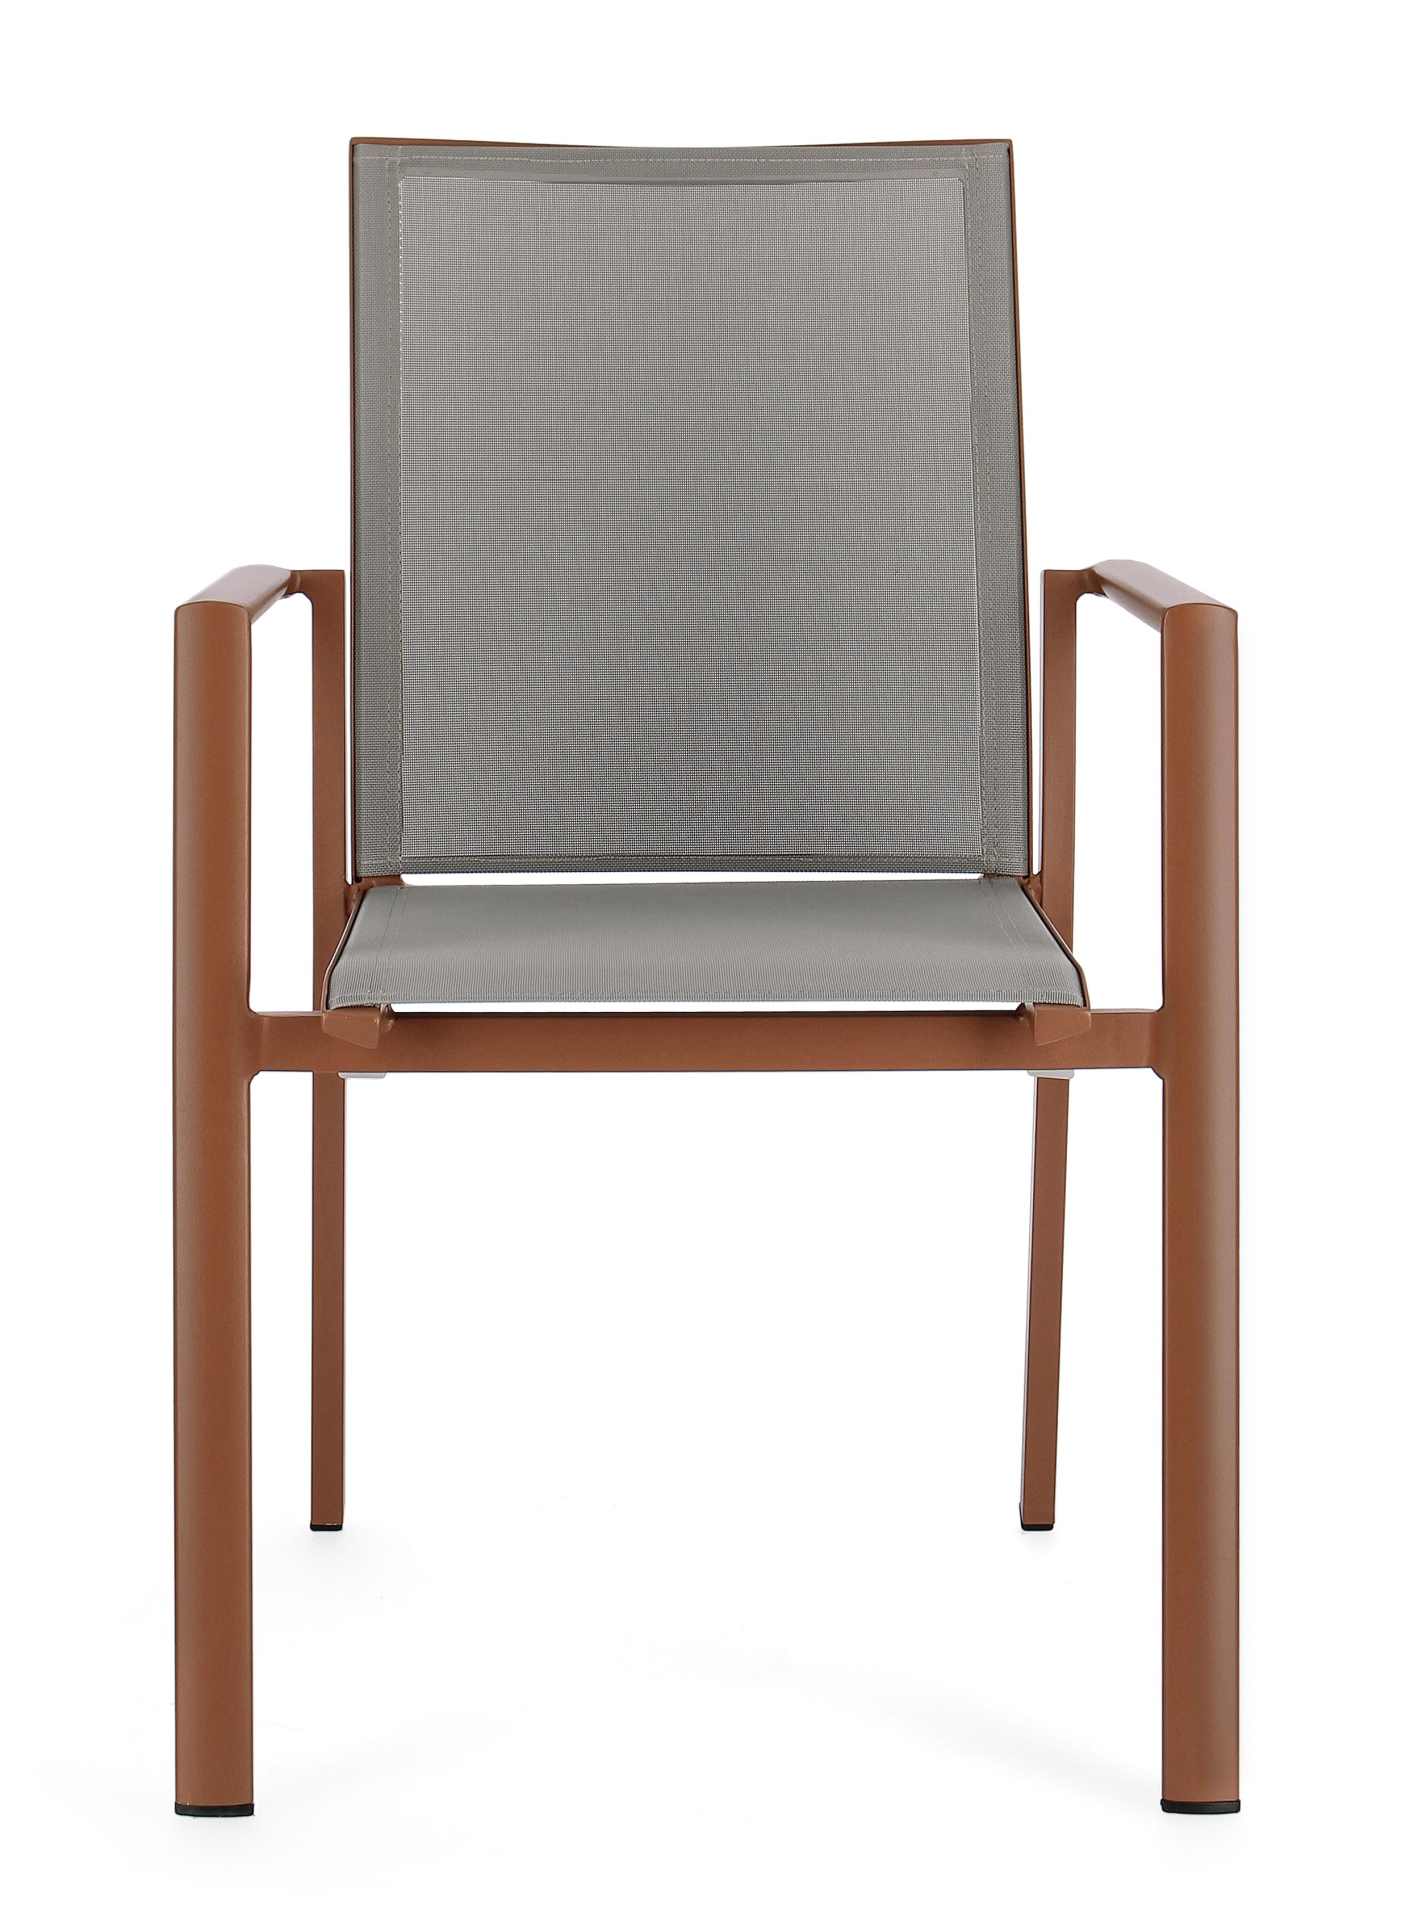 Der Gartenstuhl Konnor überzeugt mit seinem modernen Design. Gefertigt wurde er aus Textilene, welcher einen grauen Farbton besitzt. Das Gestell ist aus Aluminium und hat eine rote Farbe. Der Stuhl verfügt über eine Sitzhöhe von 45 cm und ist für den Outd